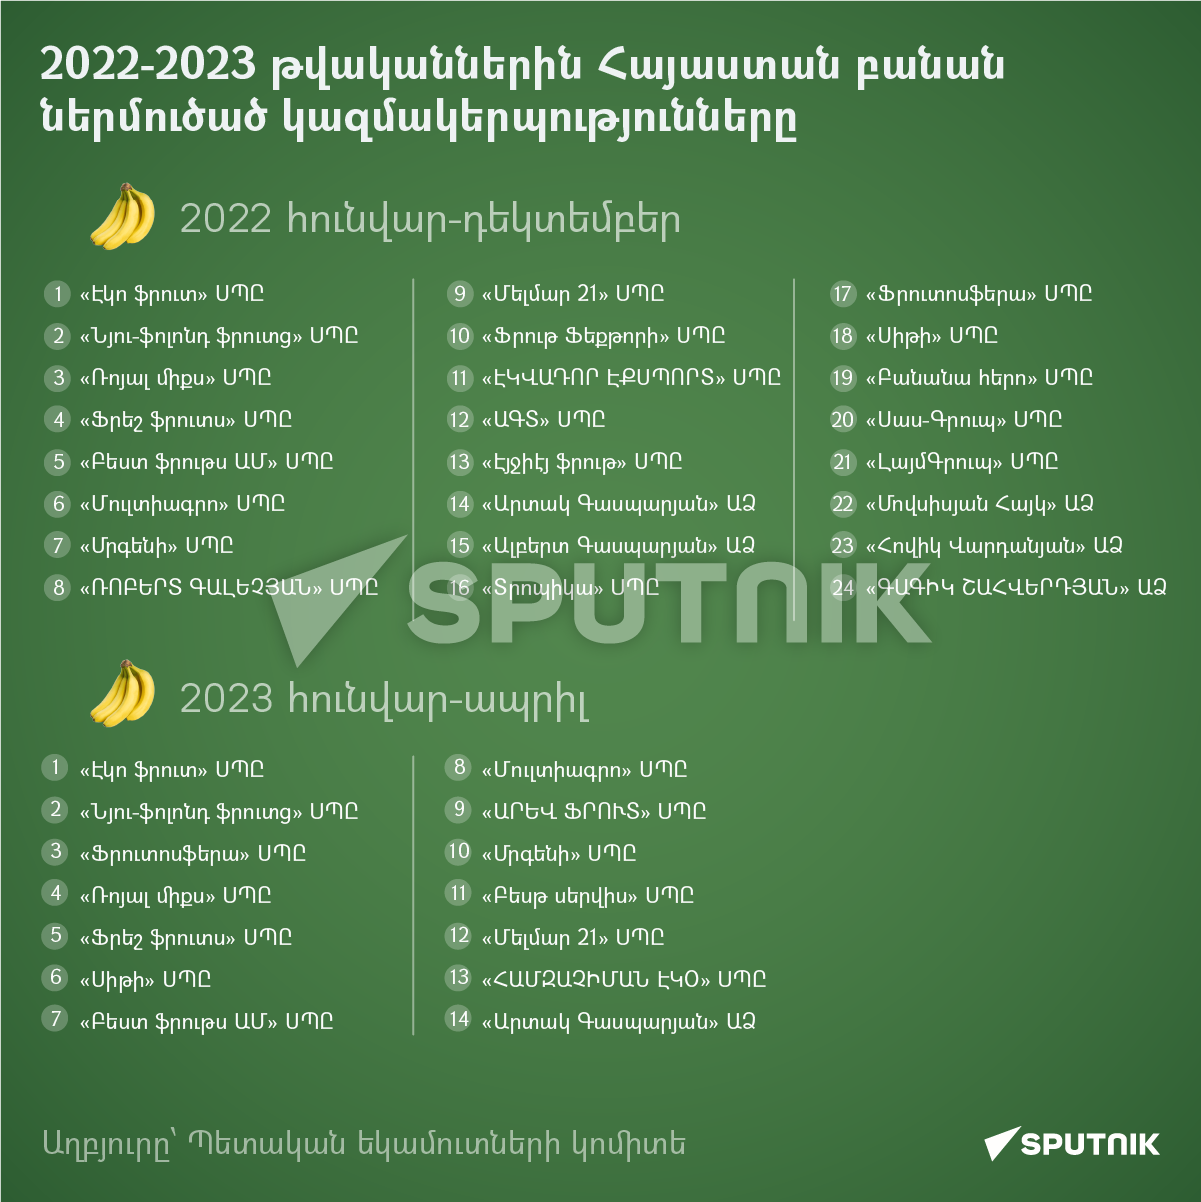 2022-2023 թվականներին Հայաստան բանան ներմուծած կազմակերպությունները - Sputnik Արմենիա